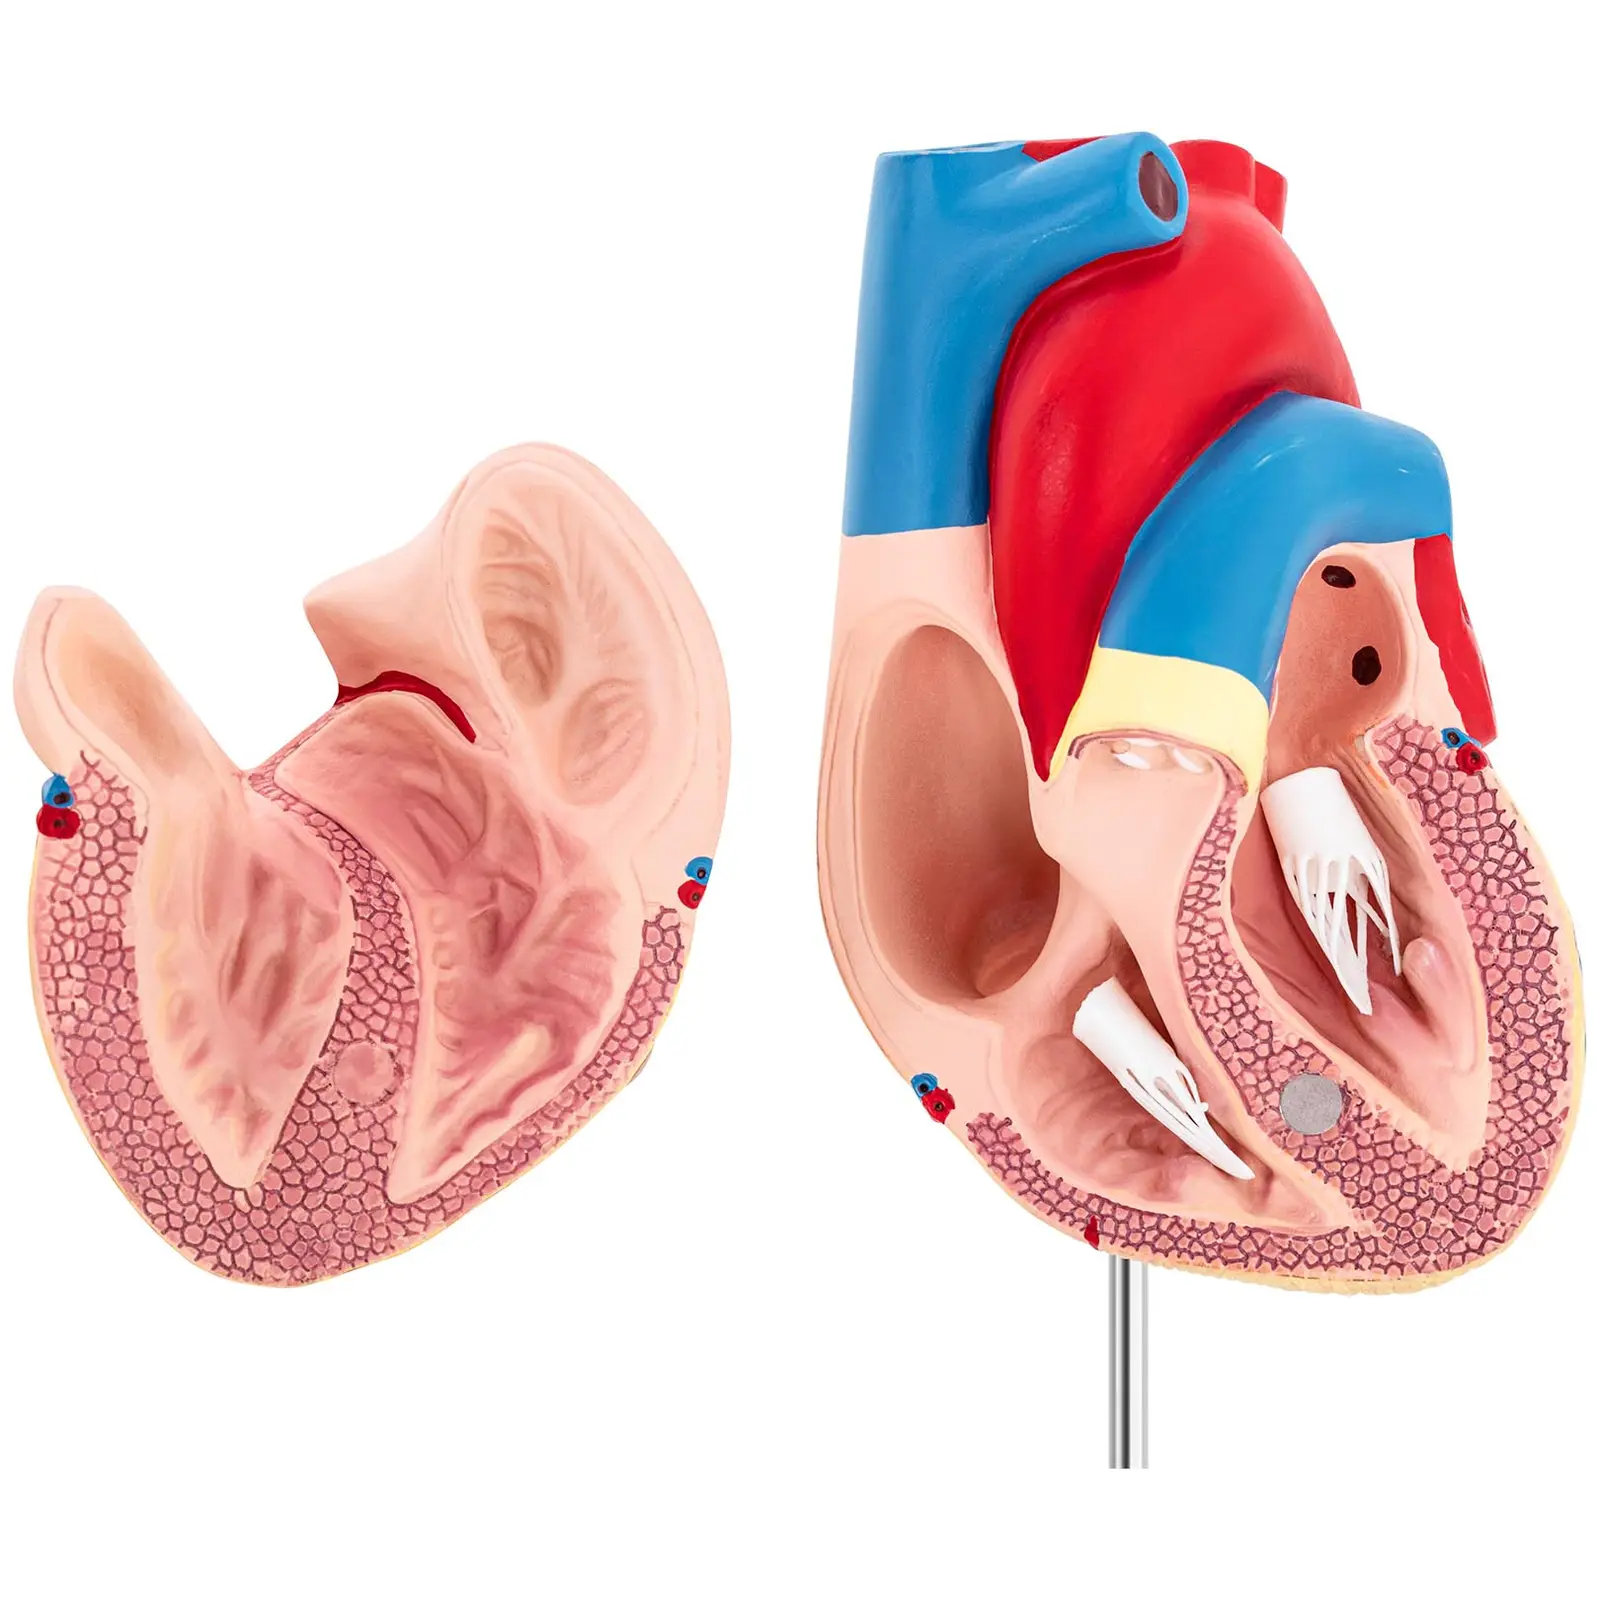 Hjärta - Anatomisk modell - Kan demonteras i två delar - Originalstorlek